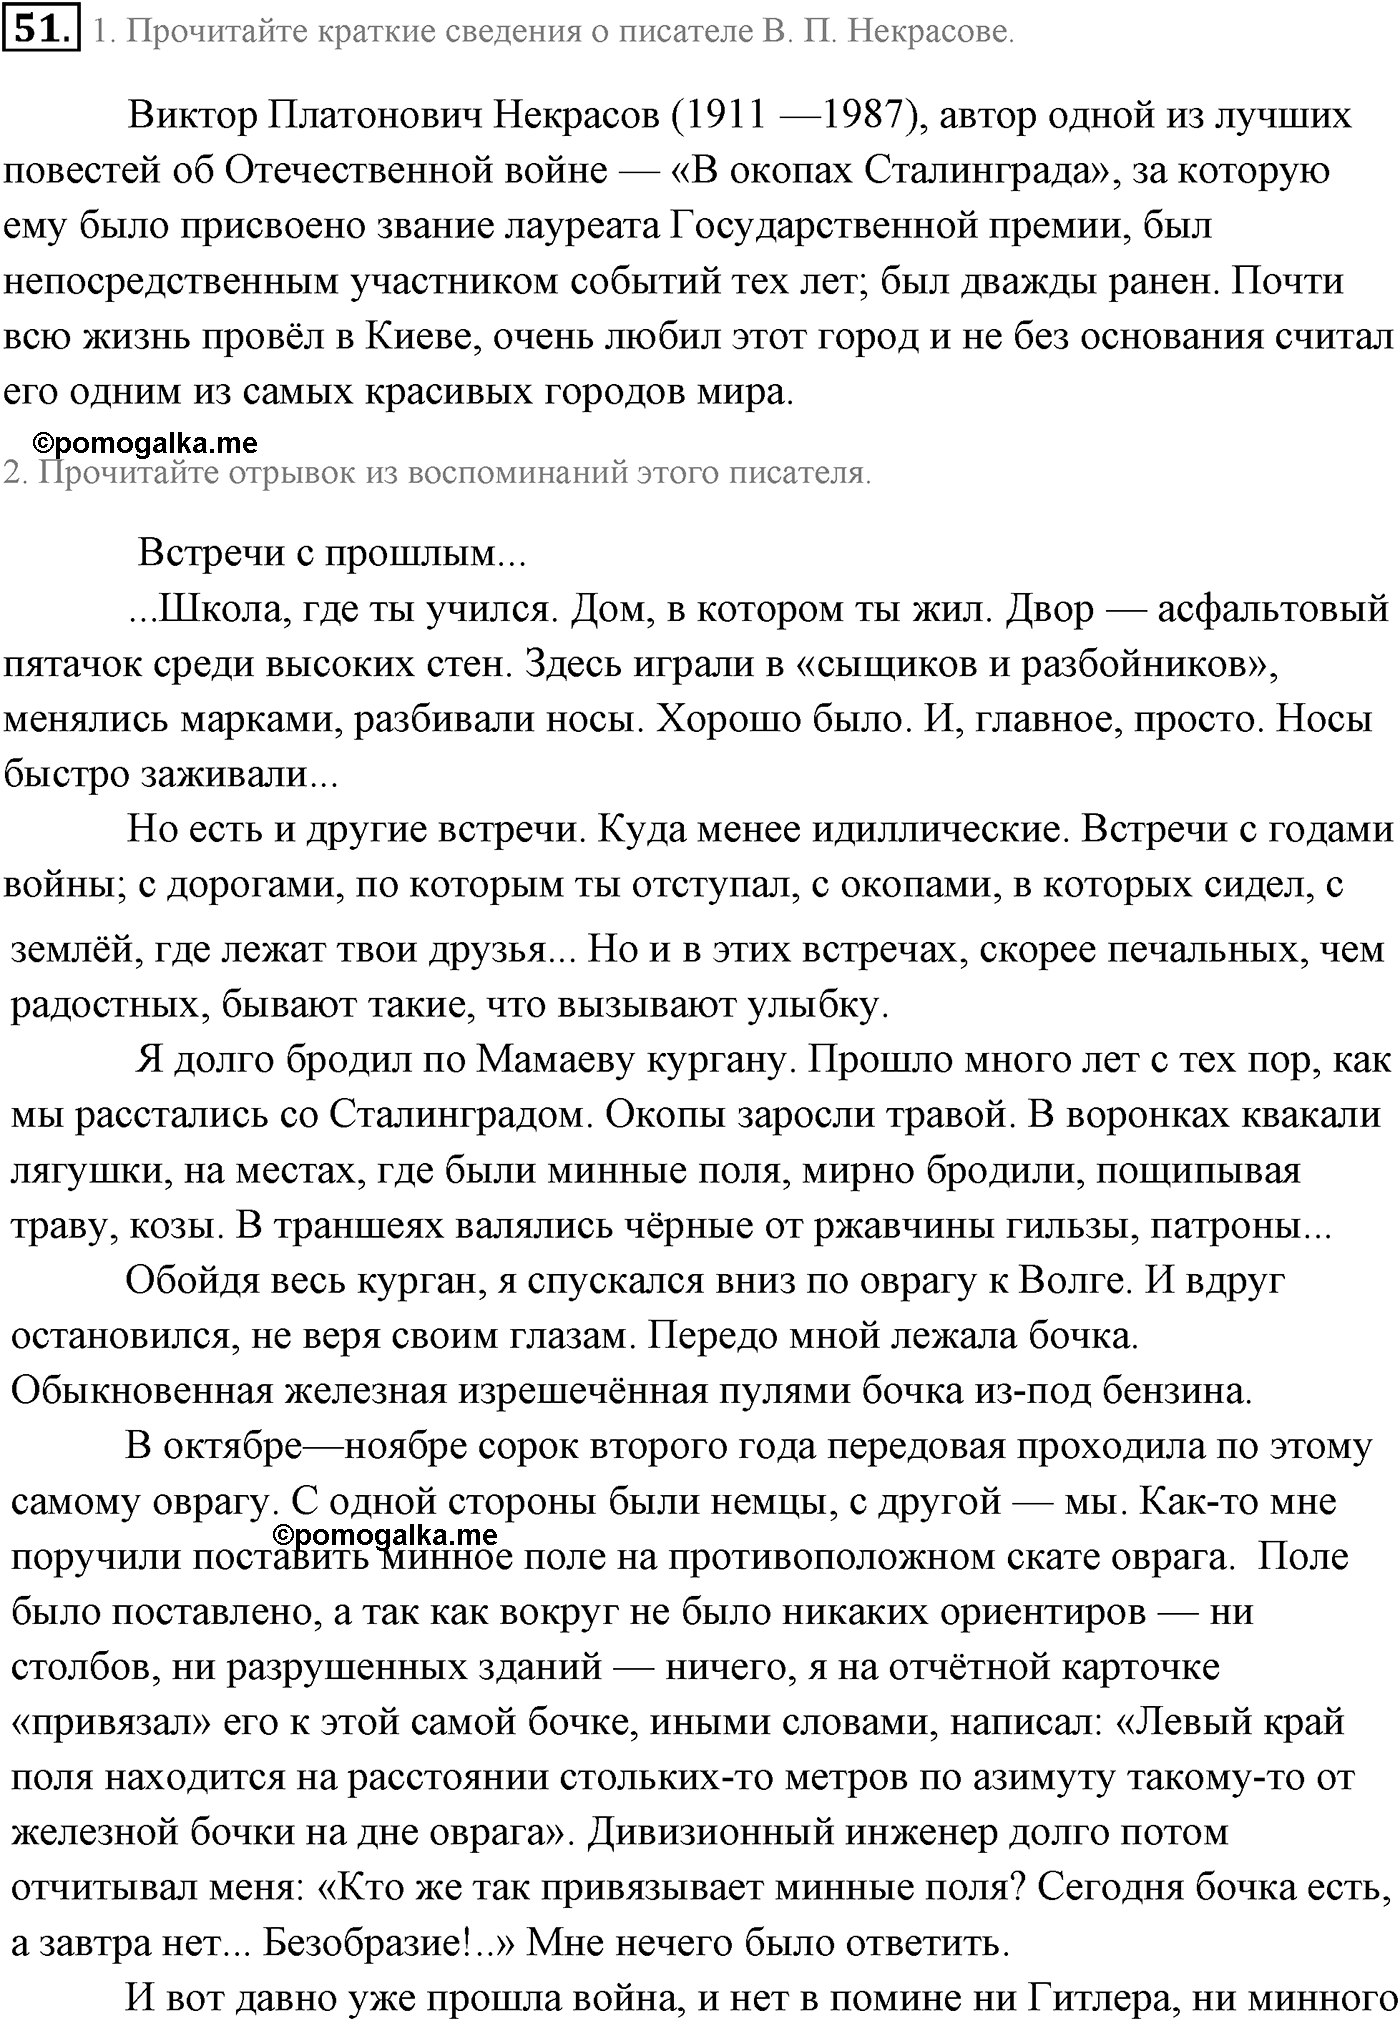 страница 34 номер 51 русский язык 9 класс Разумовская 2011 год